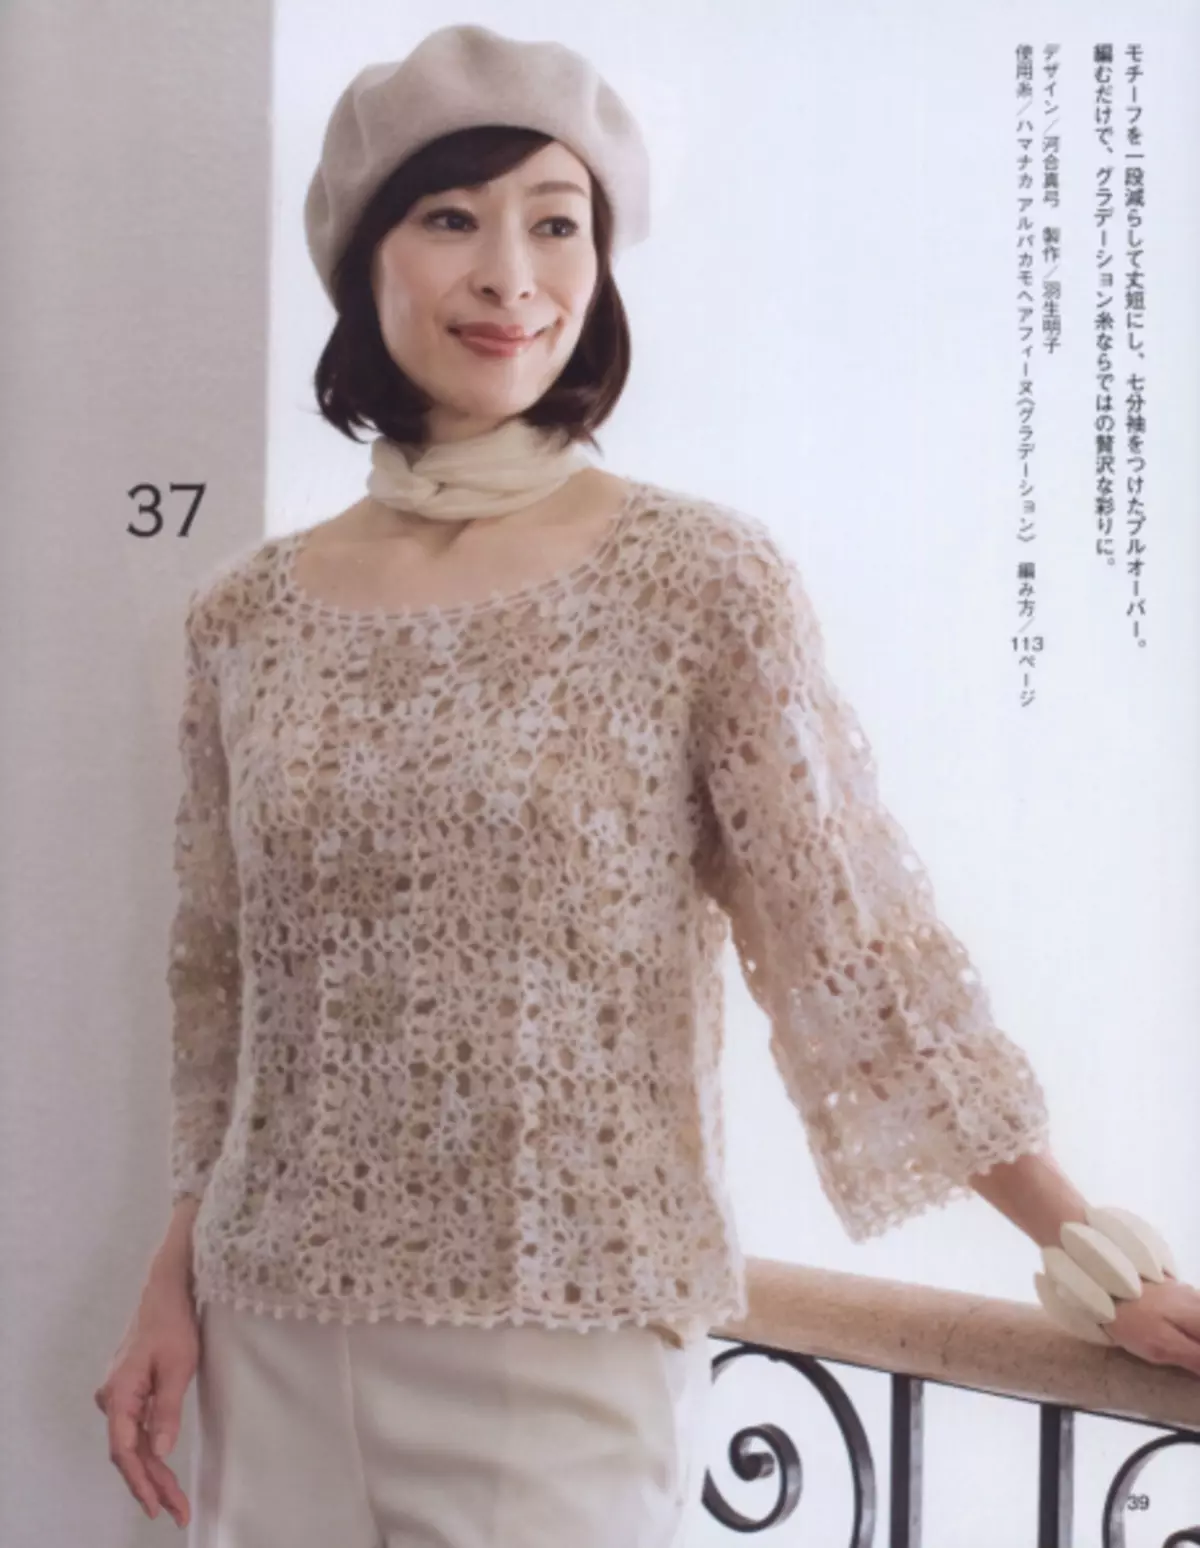 Japanese Magazine 